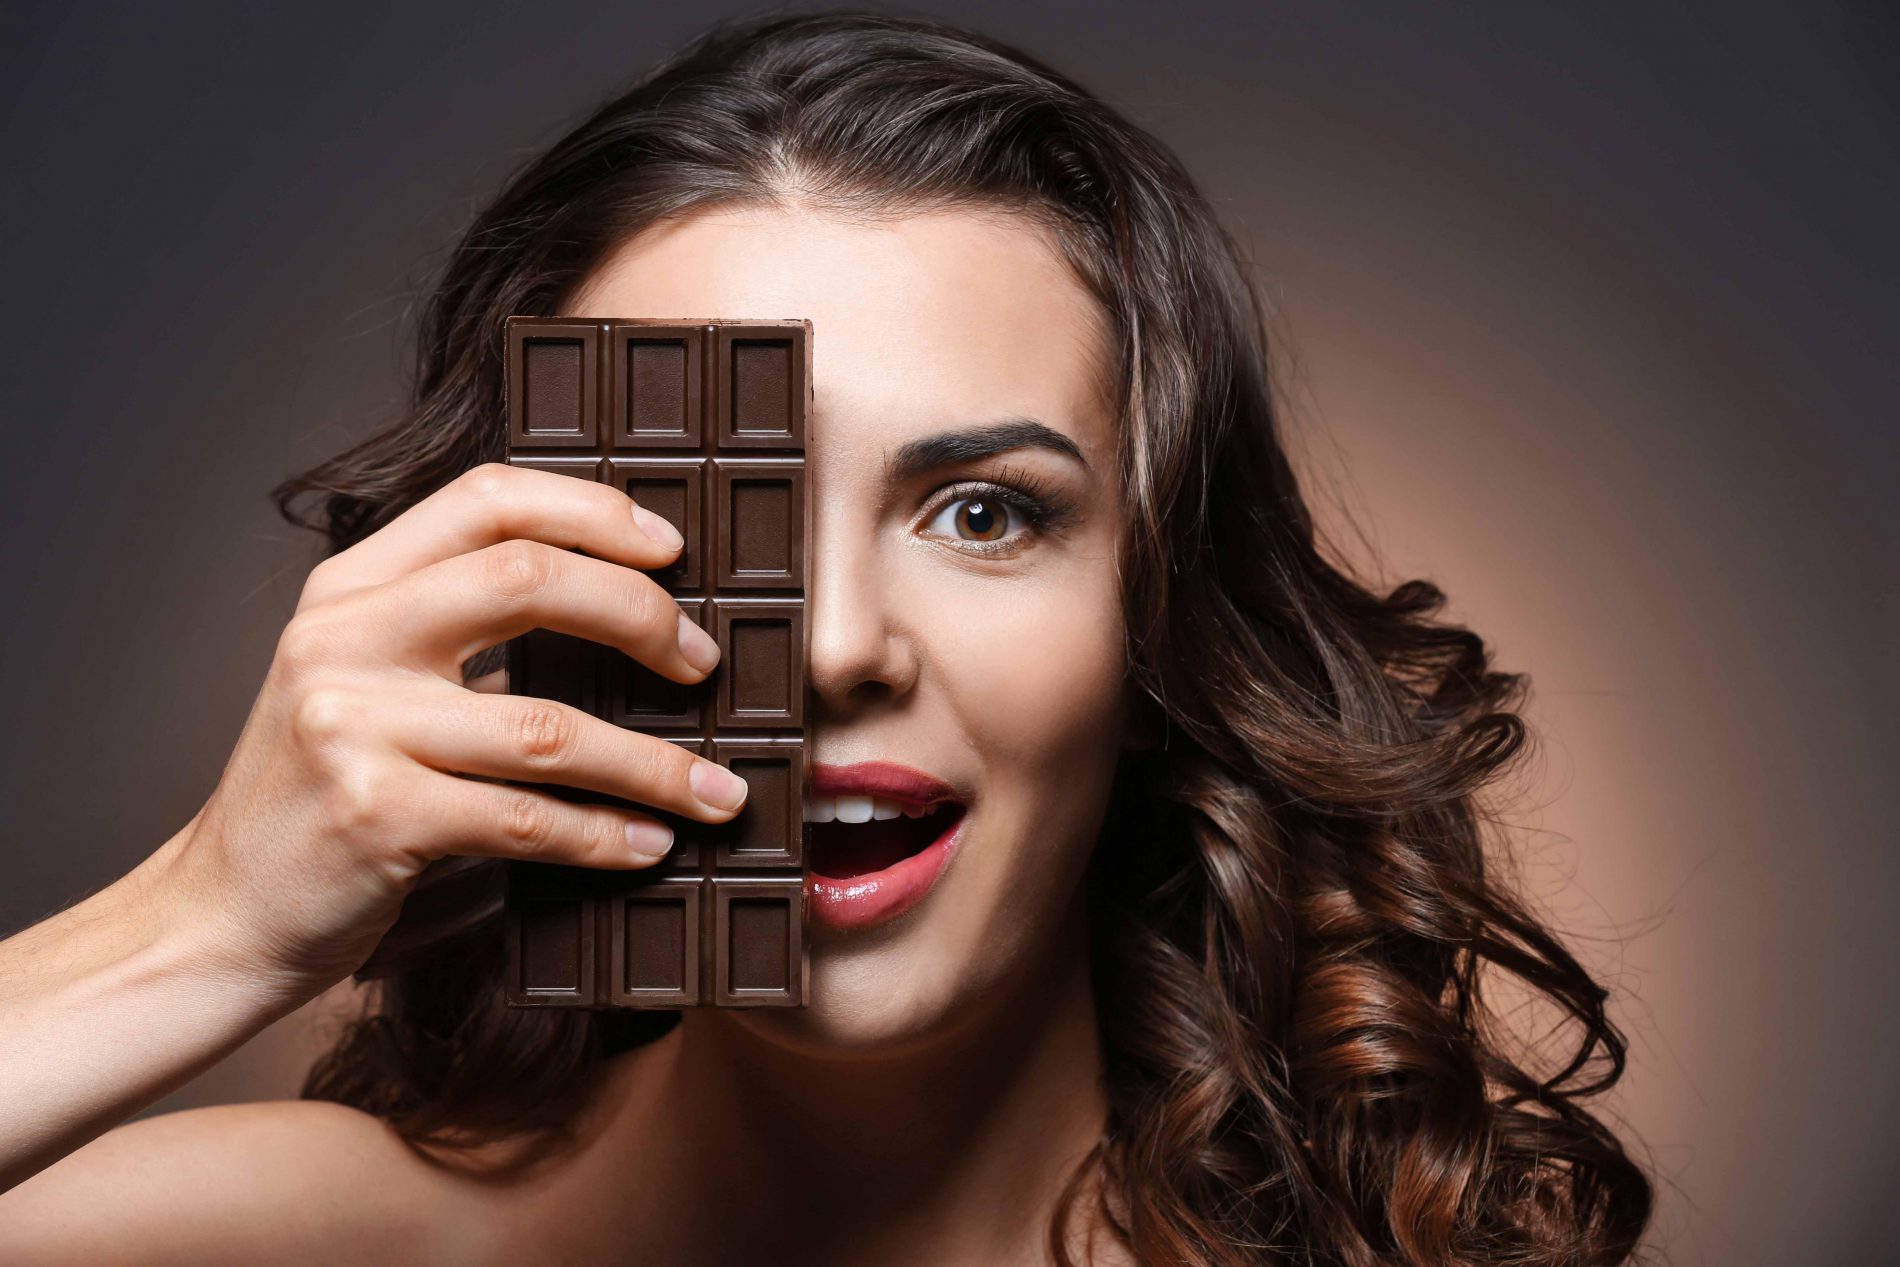 miti da sfatare sul cioccolato: ecco la verità